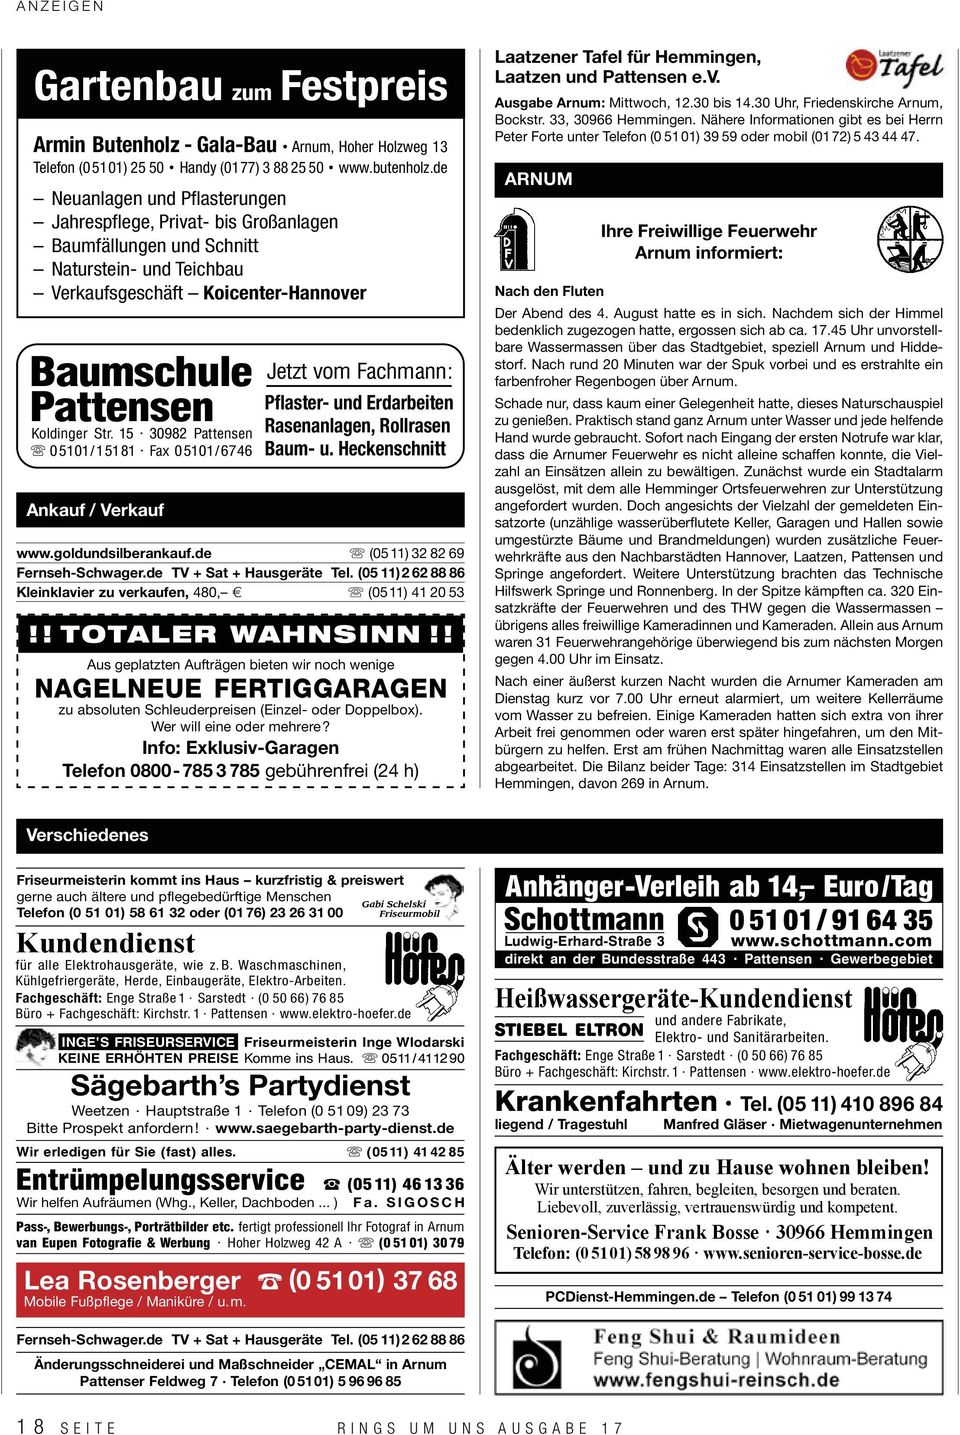 15 30982 Pattensen 05101/15181 Fax 05101/6746 Ankauf / Verkauf Jetzt vom Fachmann: Pflaster- und Erdarbeiten Rasenanlagen, Rollrasen Baum- u. Heckenschnitt www.goldundsilberankauf.